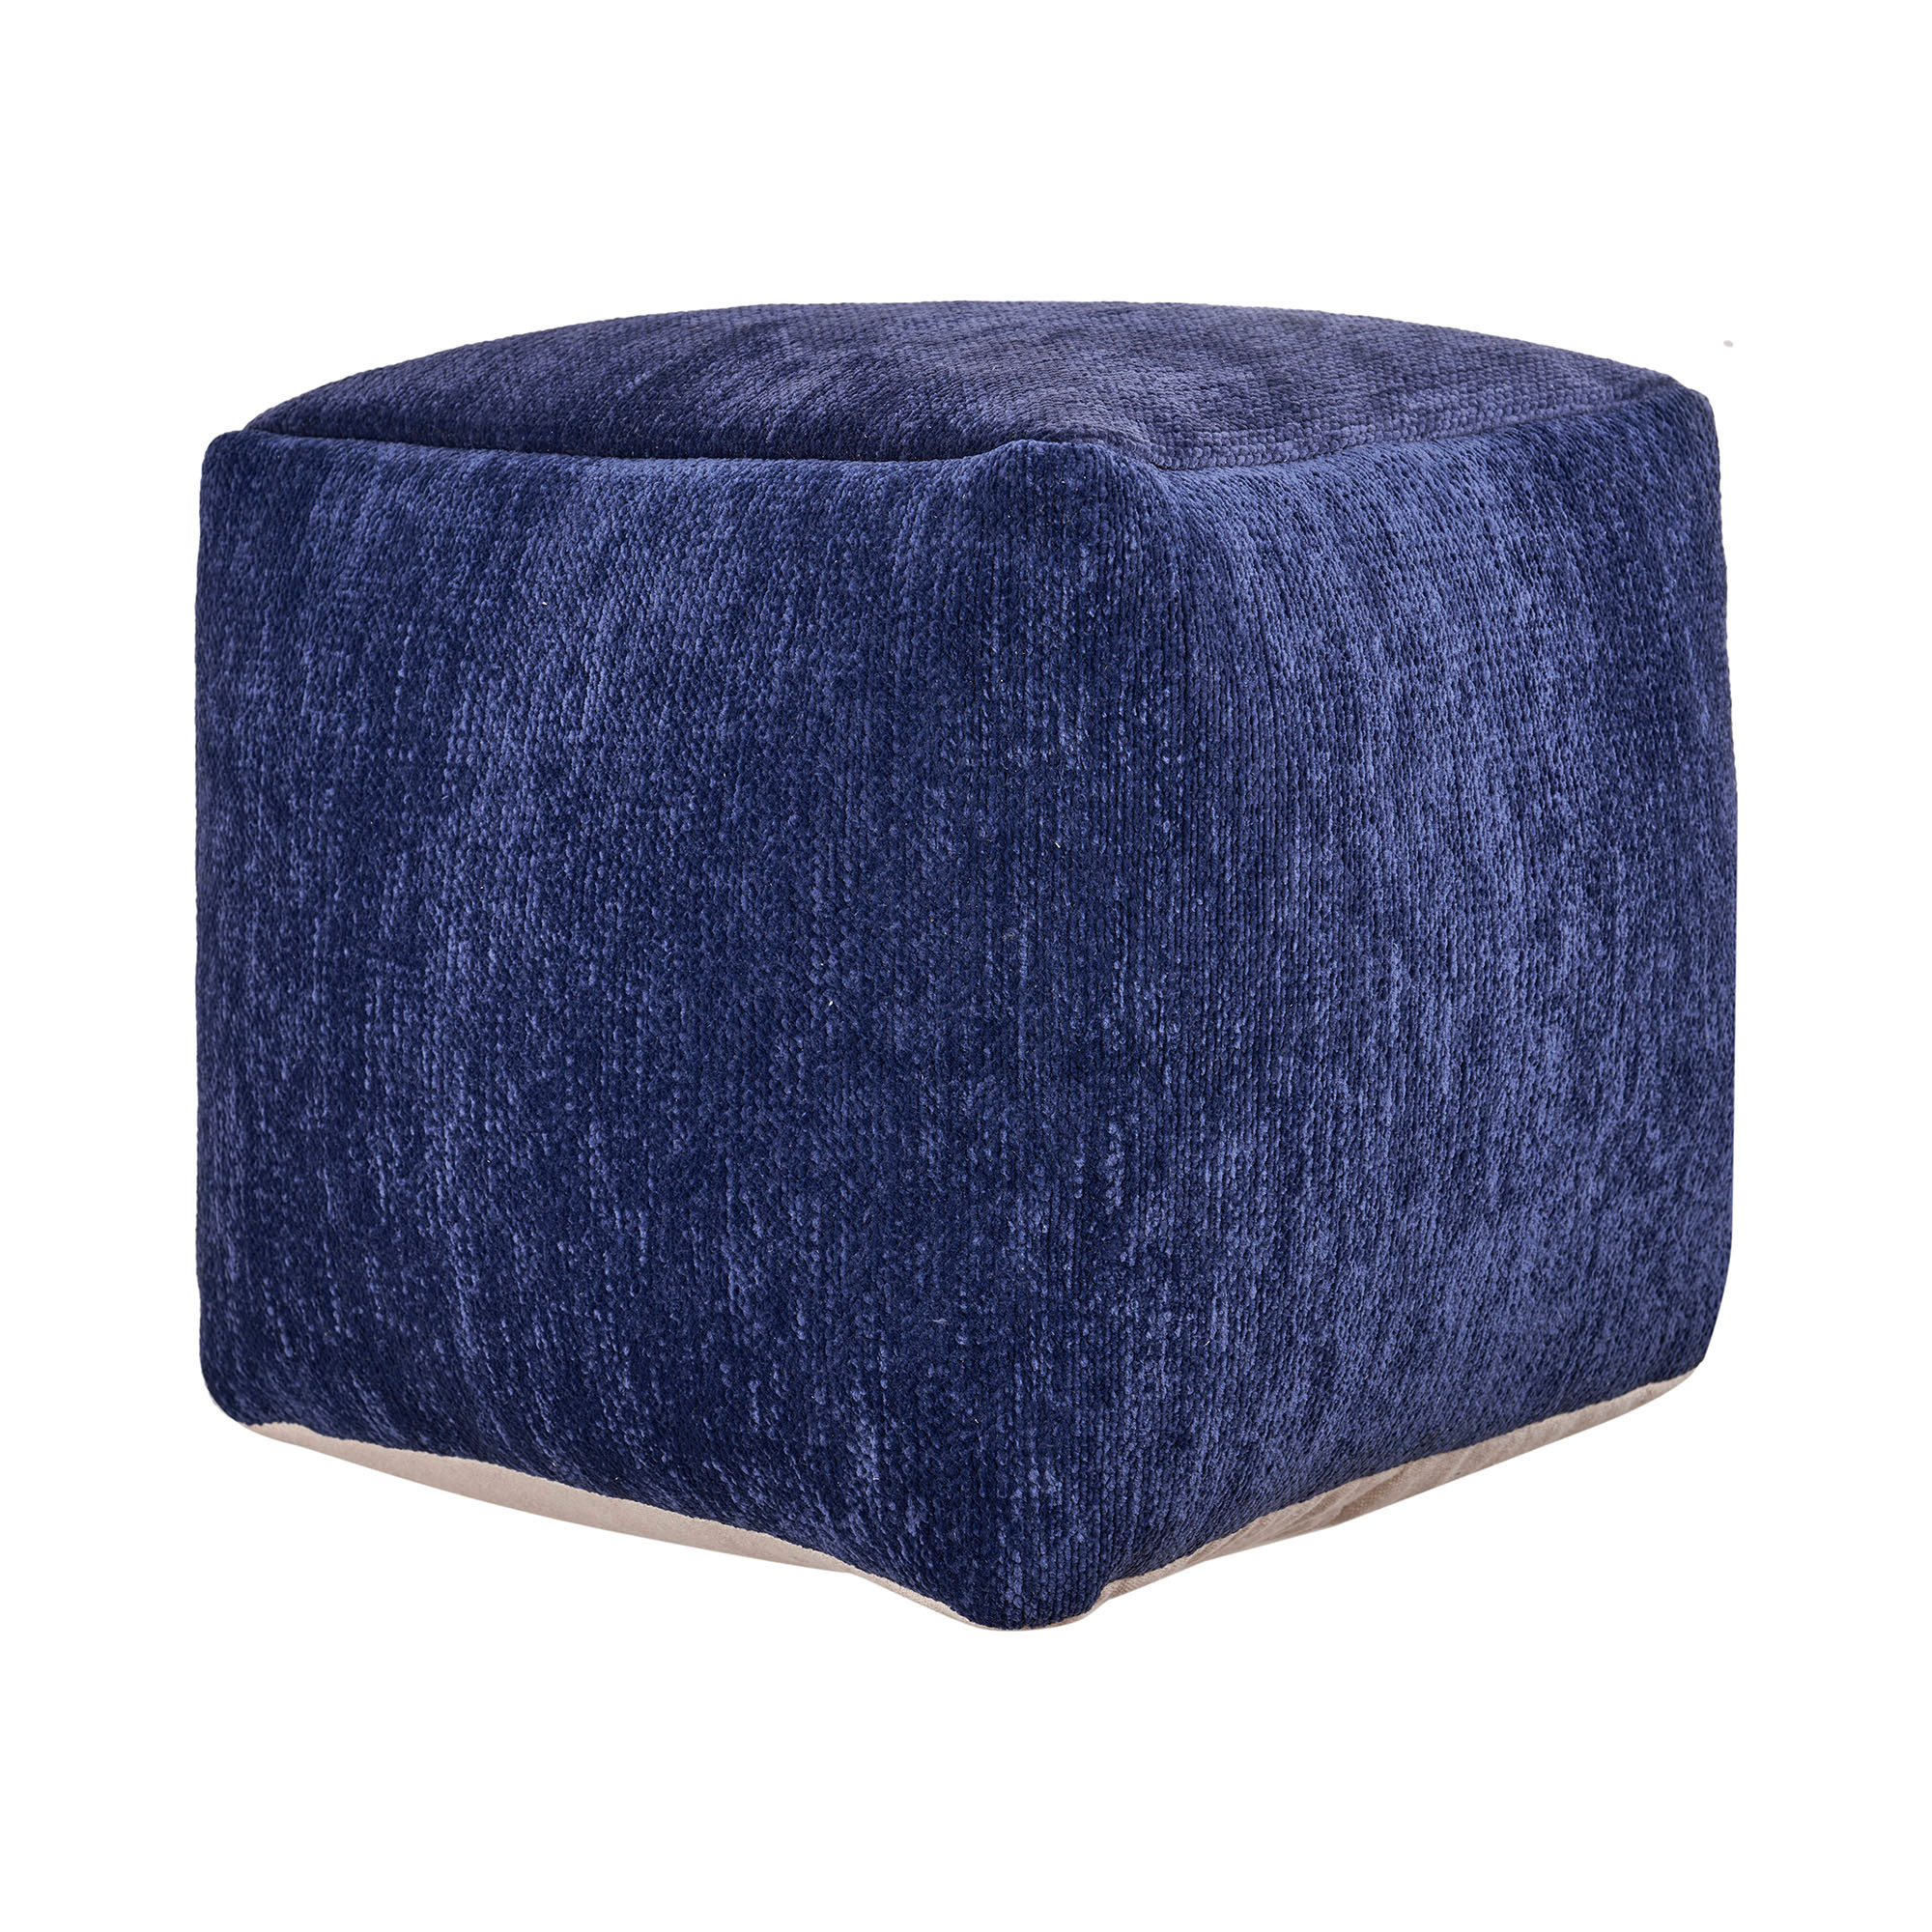 18" Blue Chenille Cube Pouf Ottoman-534107-1